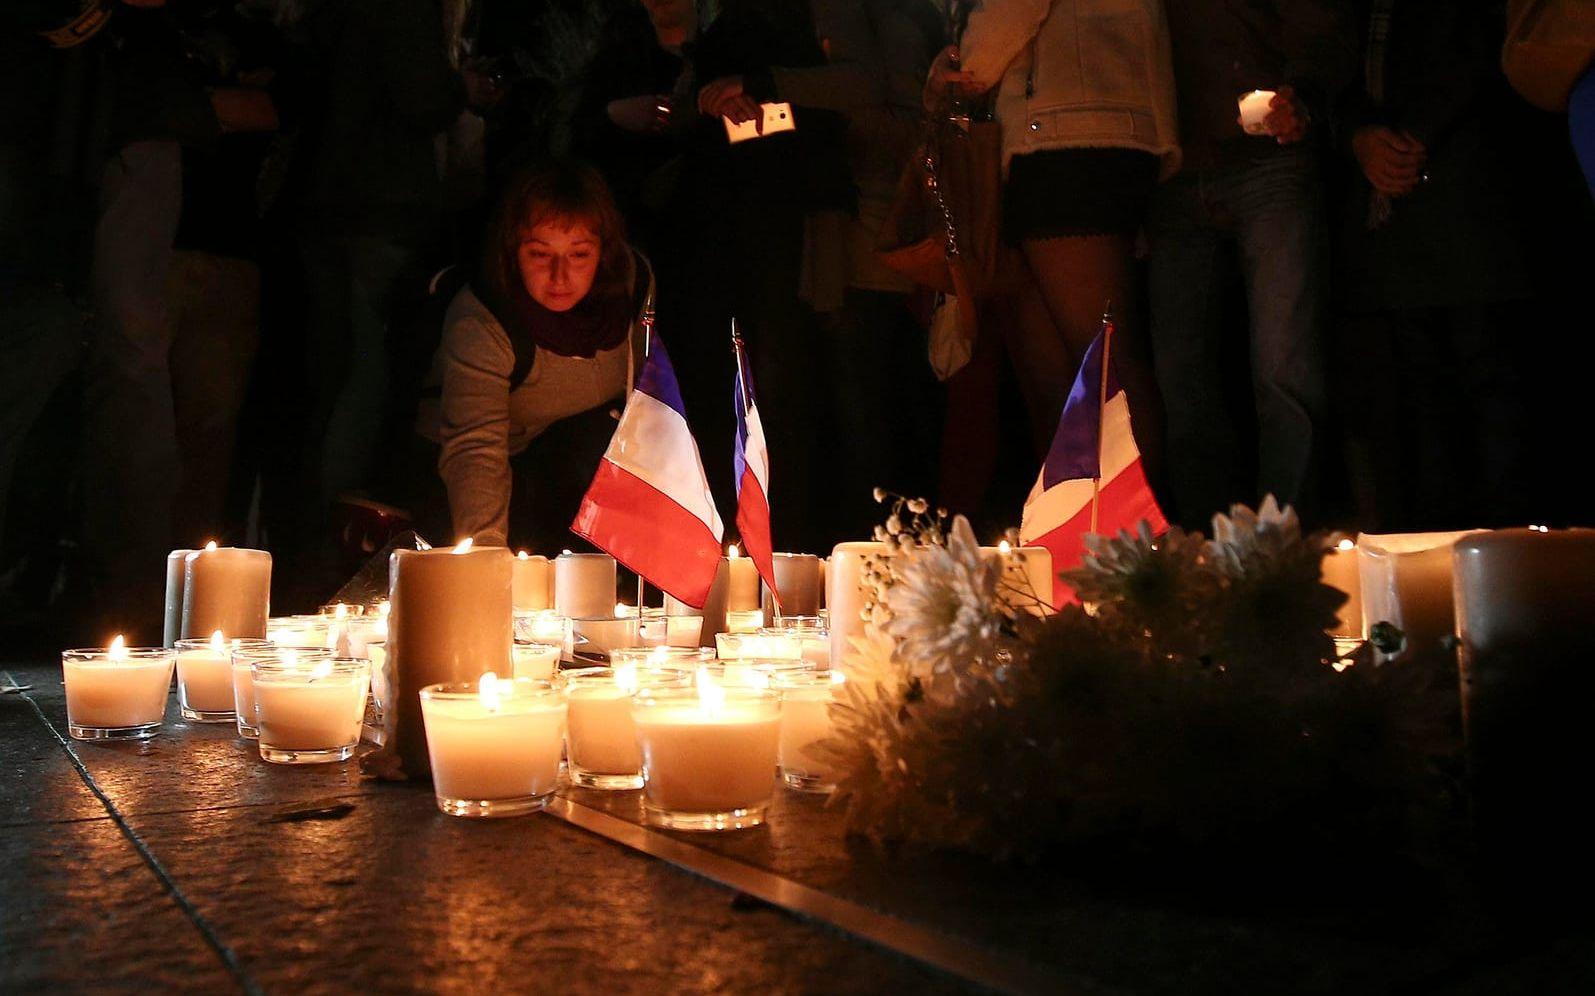 Människor över hela världen sörjer offren i Nice. Här tänder en kvinna i Sydney, Australien ett ljus. Foto: TT